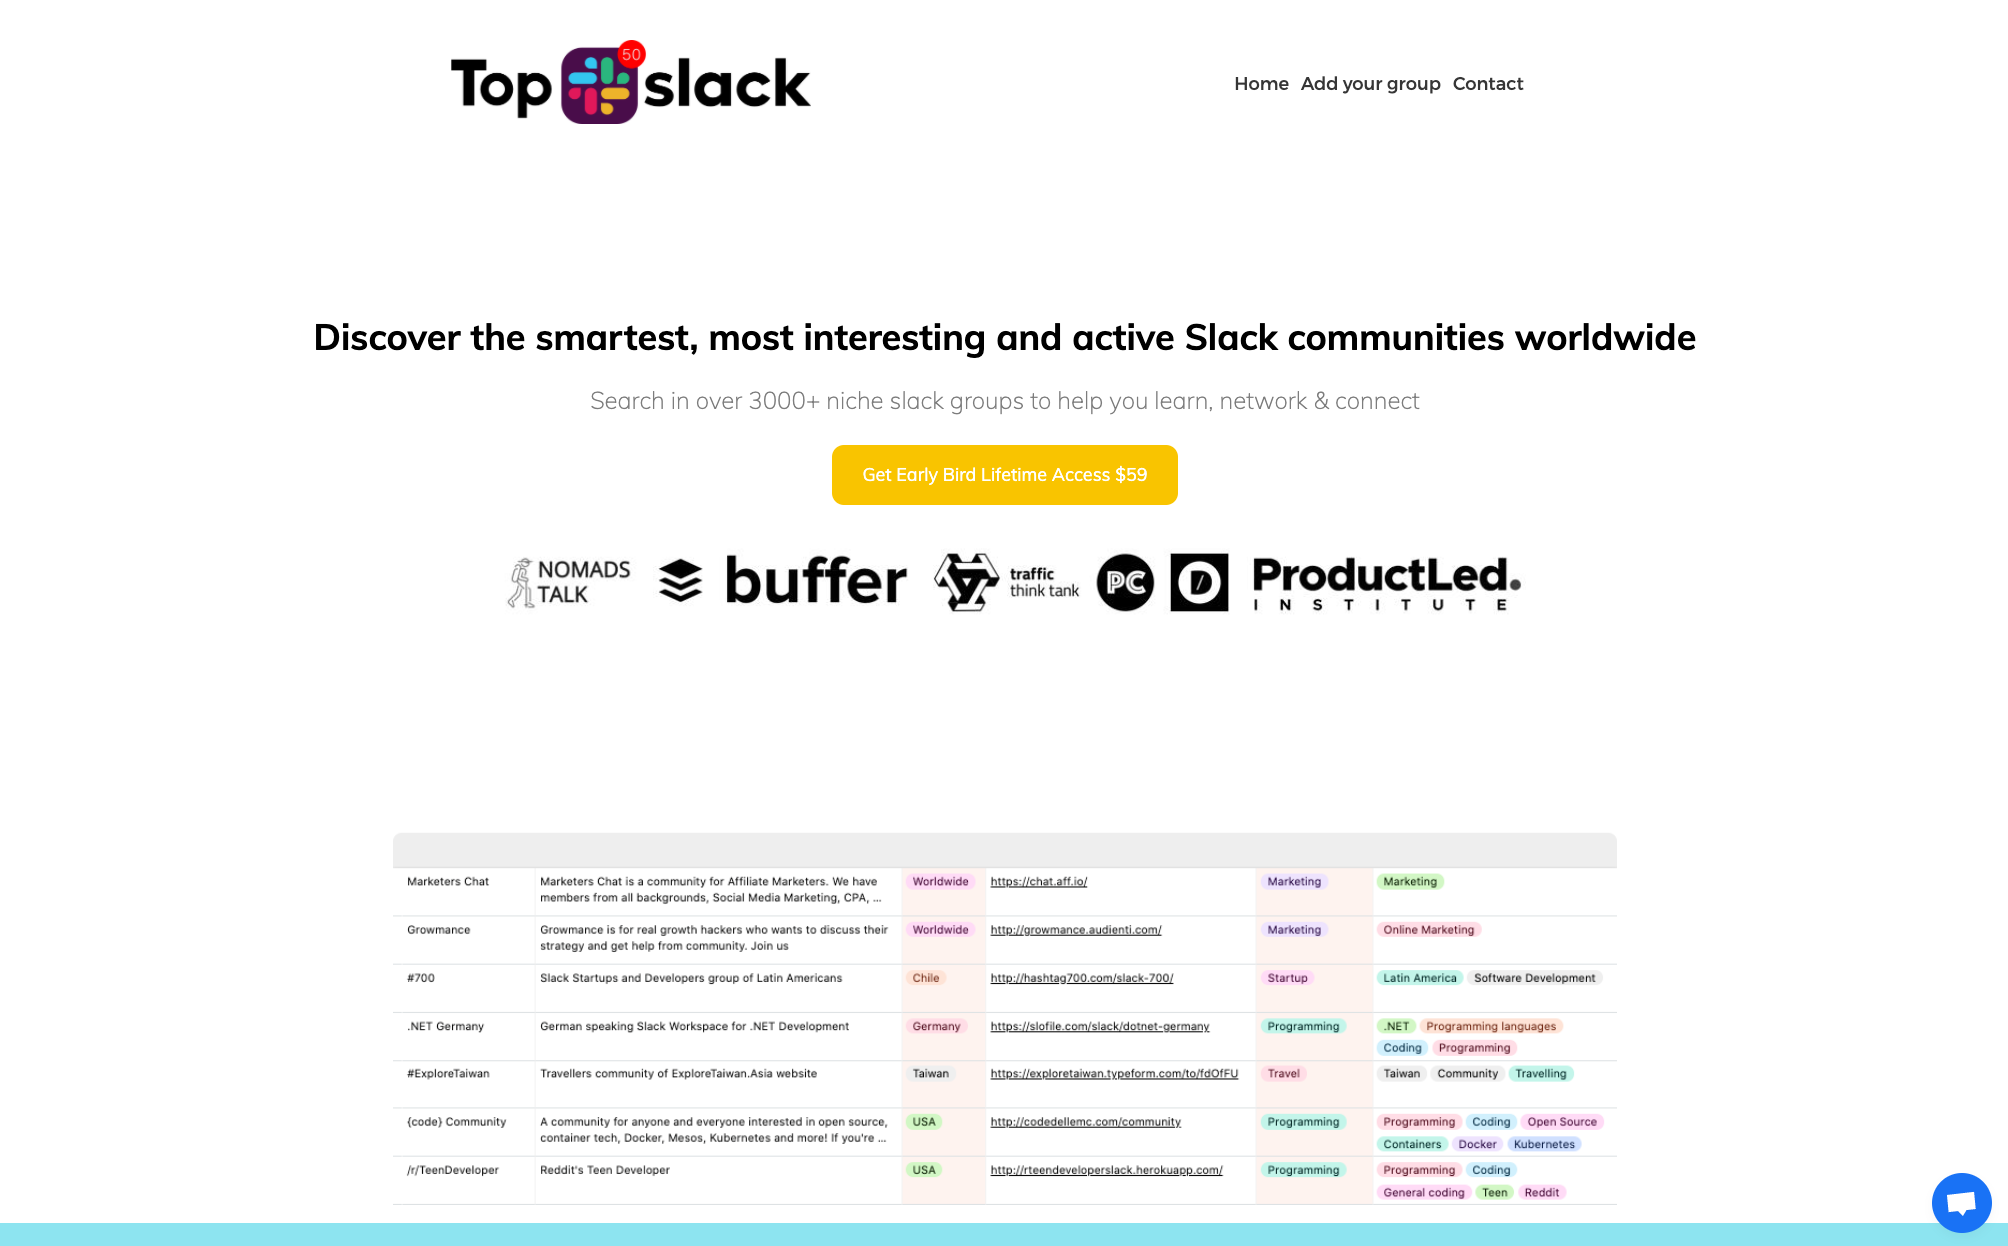 Find detailed information about Top 50 Slack